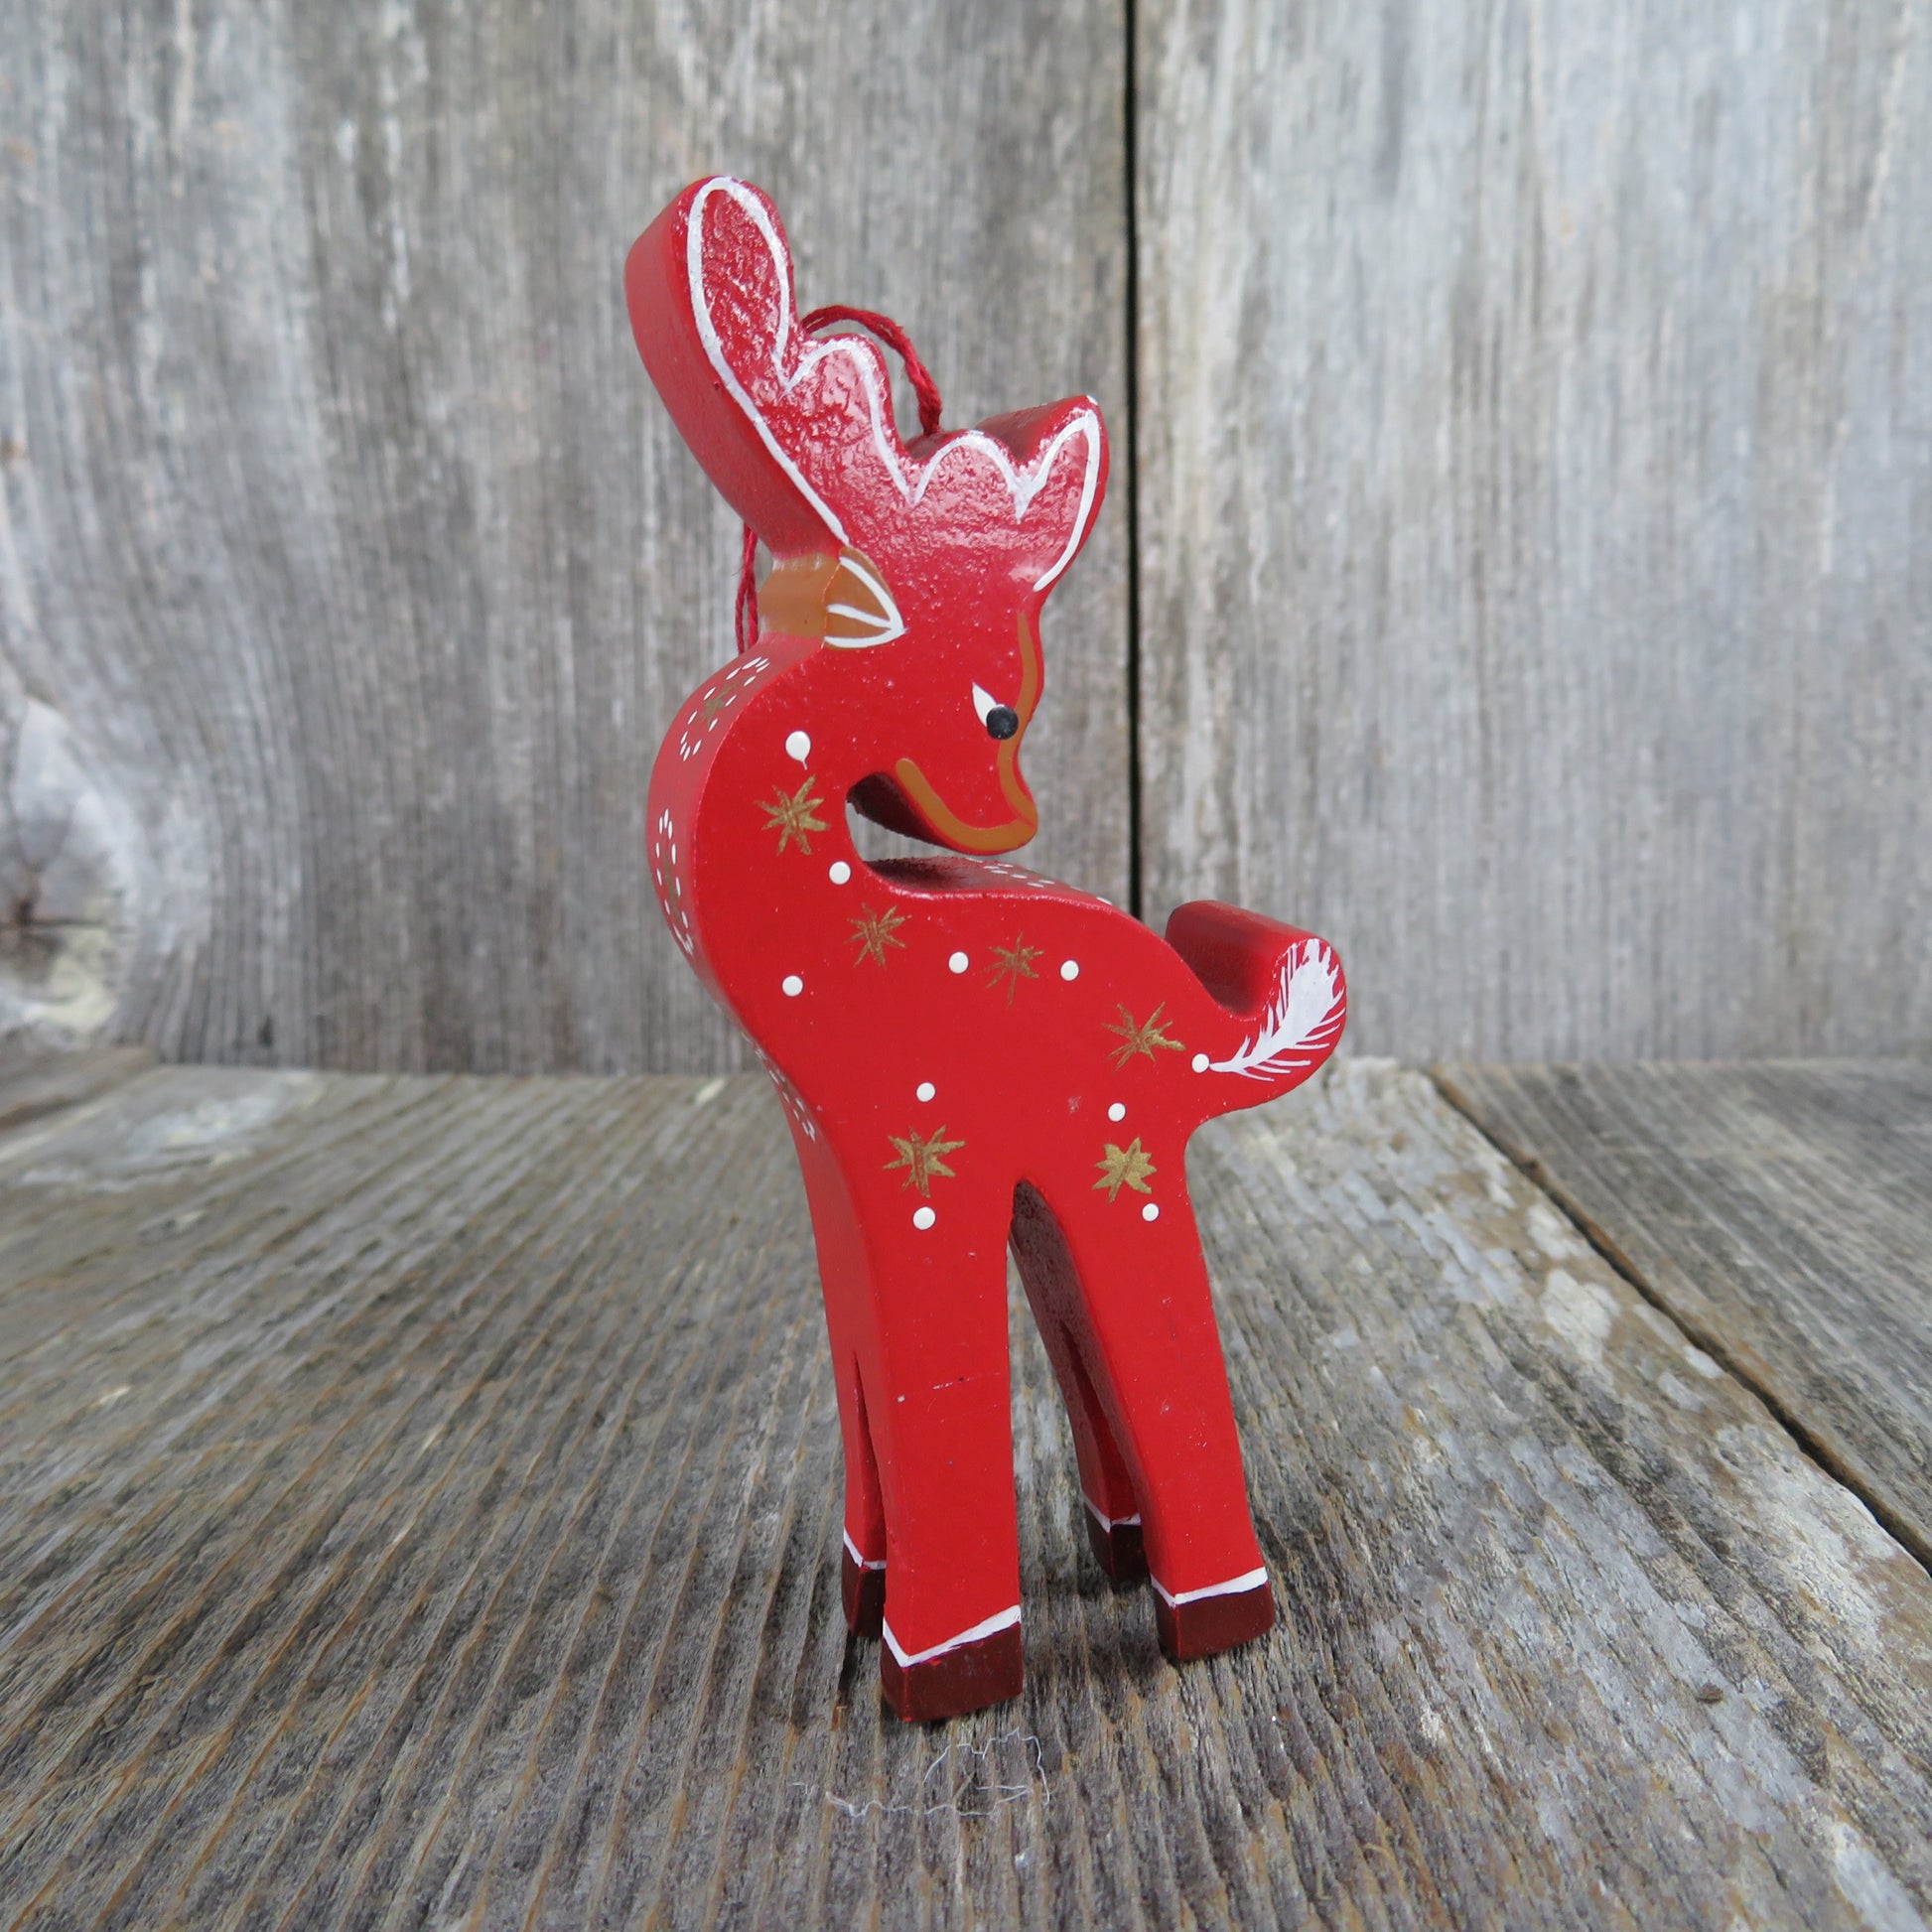 Vintage Reindeer Wood Ornament Red Gold Christmas Deer Looking Over Shoulder - At Grandma's Table